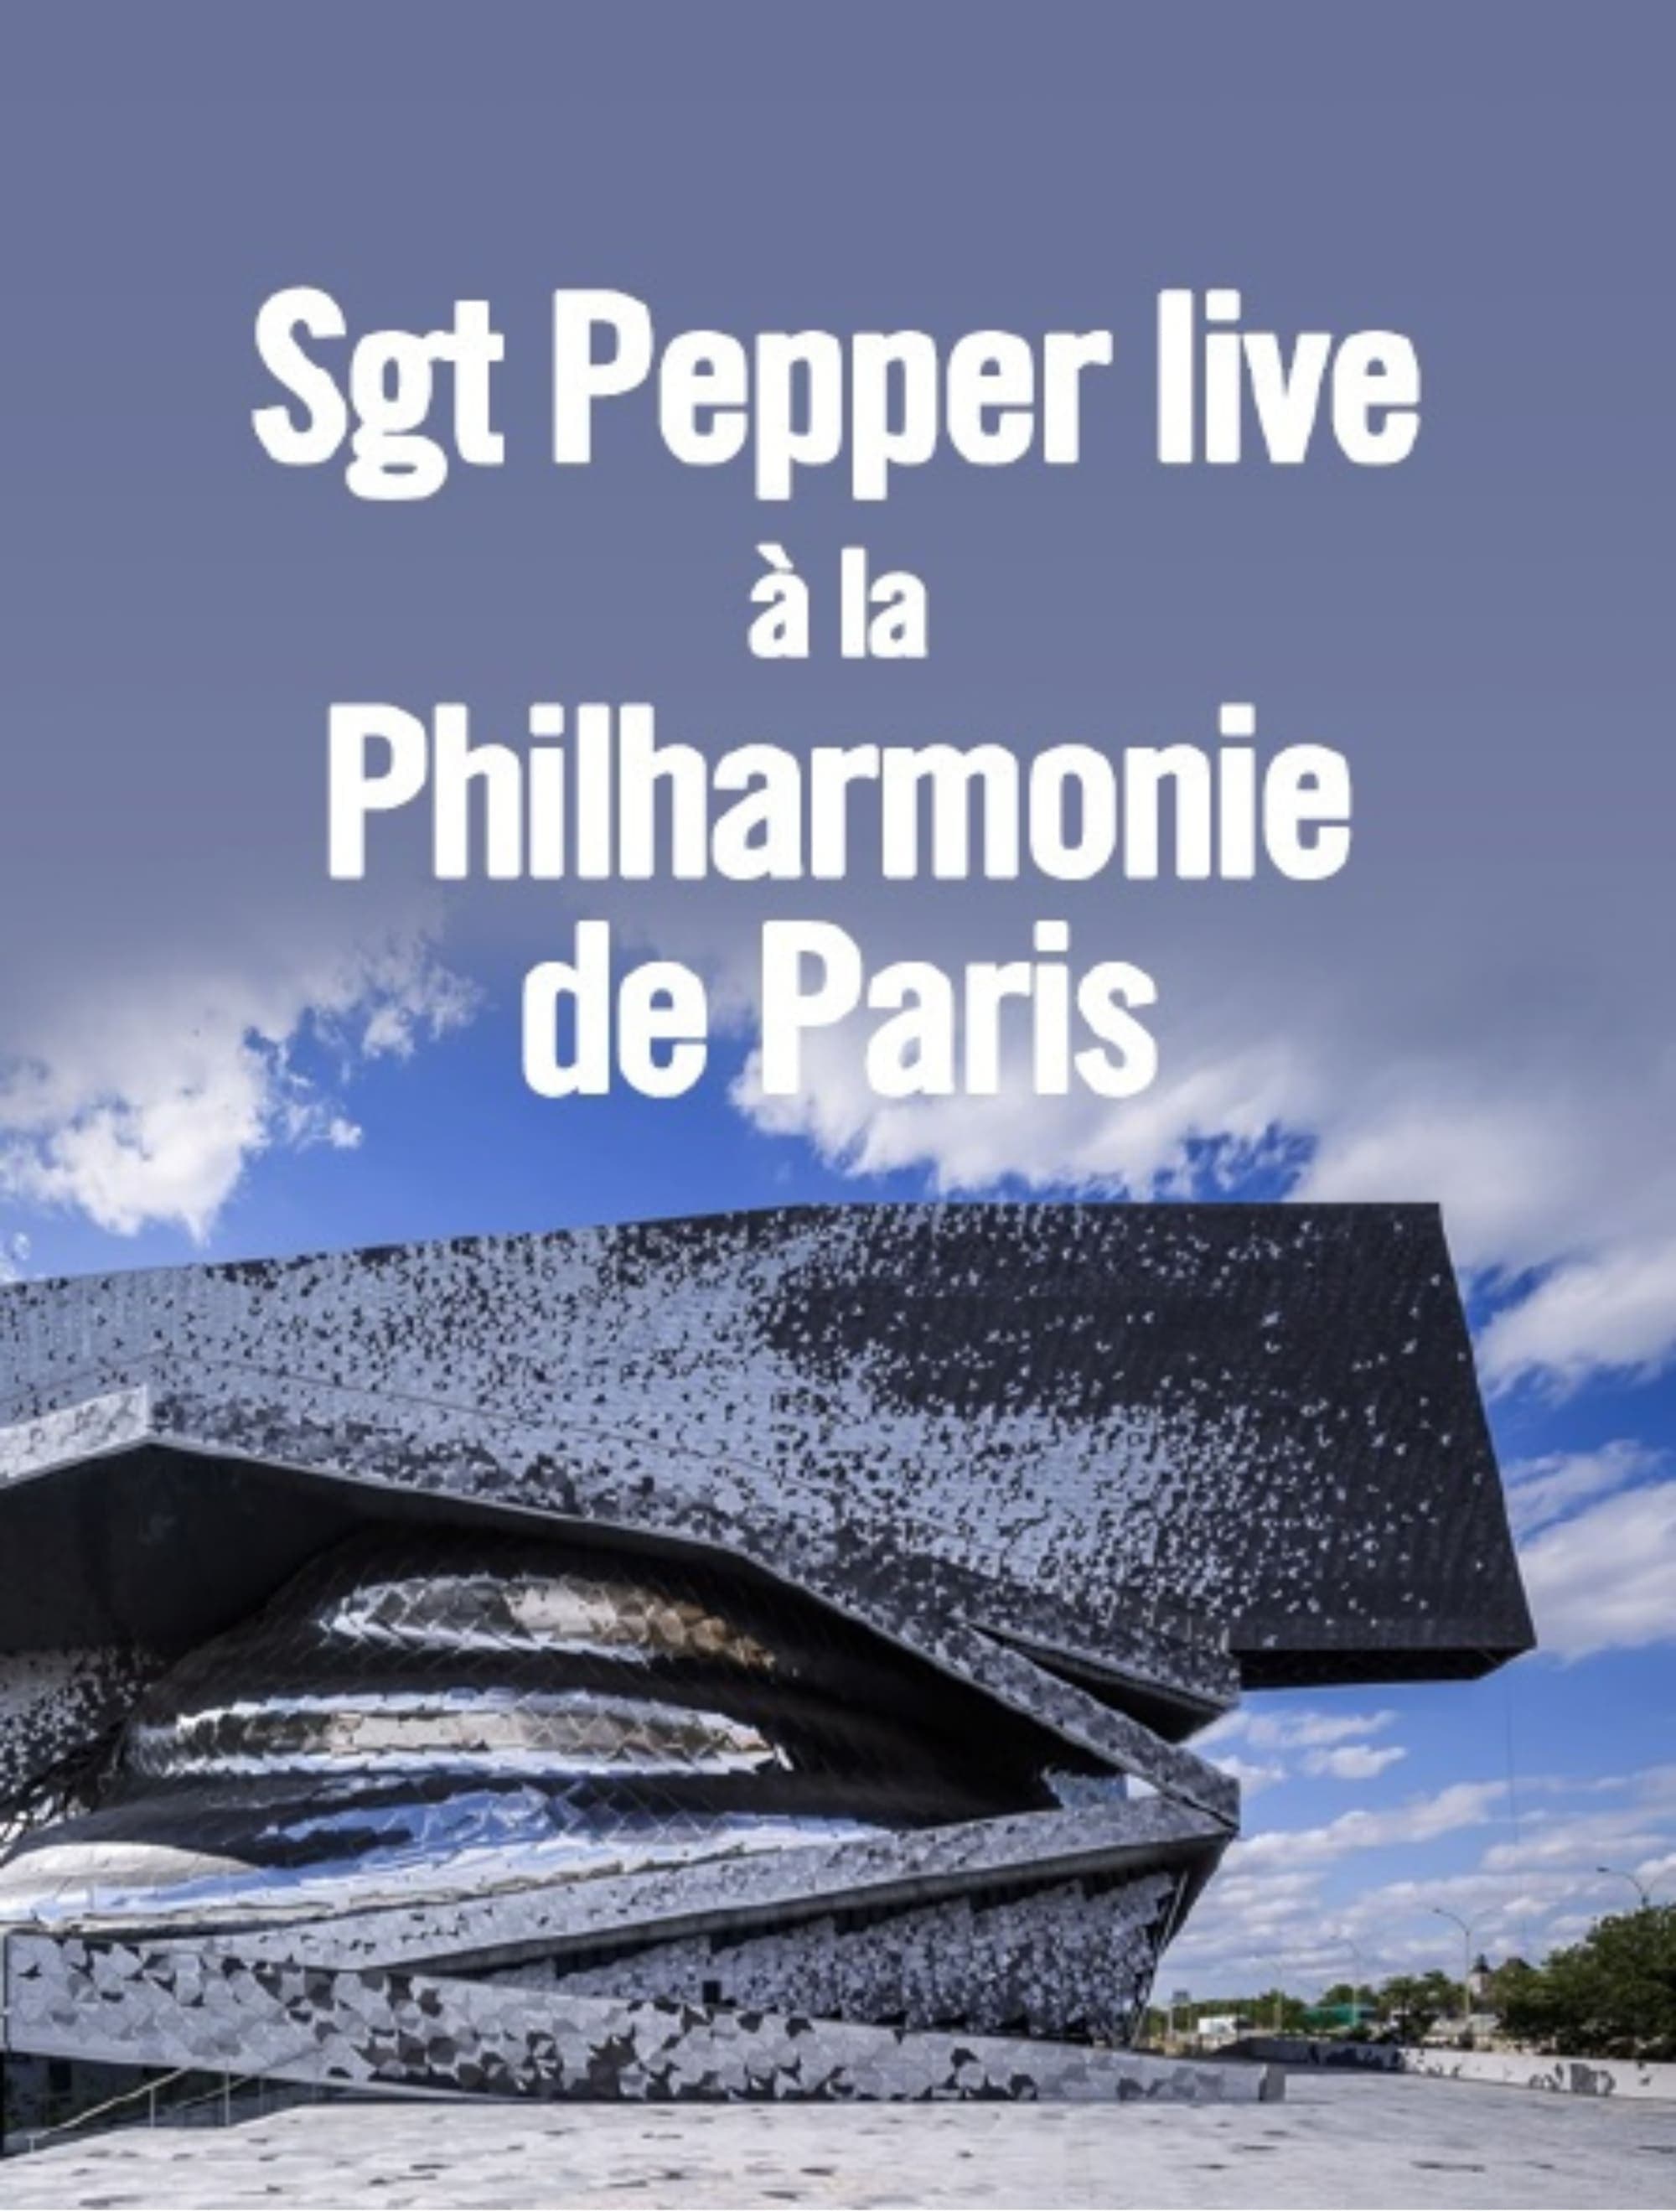 Sgt. Pepper live at the Philharmonie de Paris